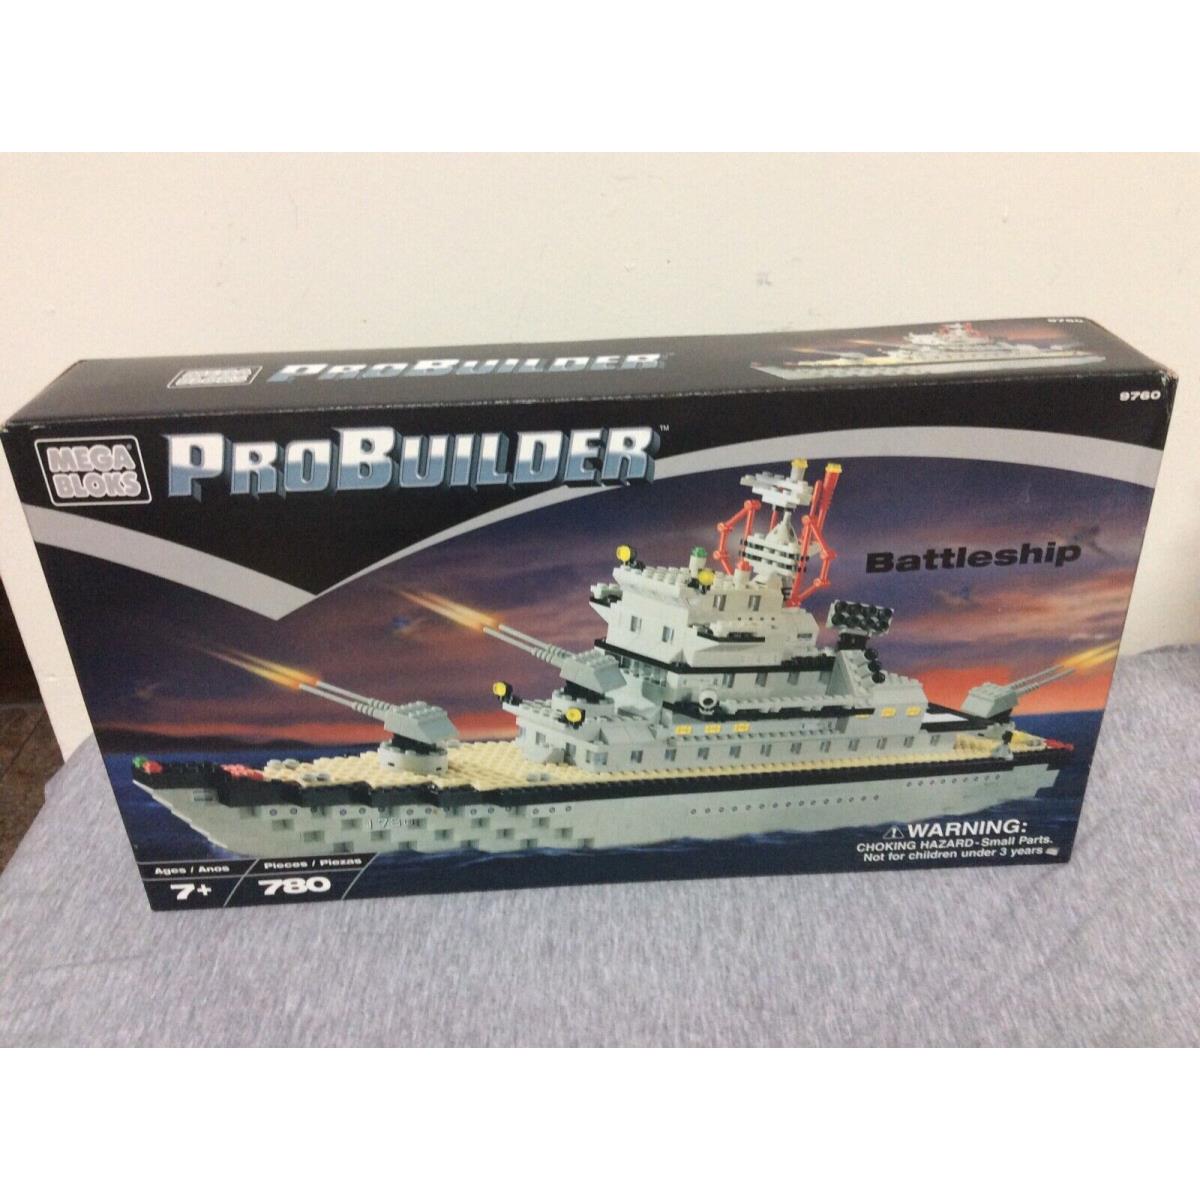 Mega Bloks Pro Builder Battleship 9760 Series 2001